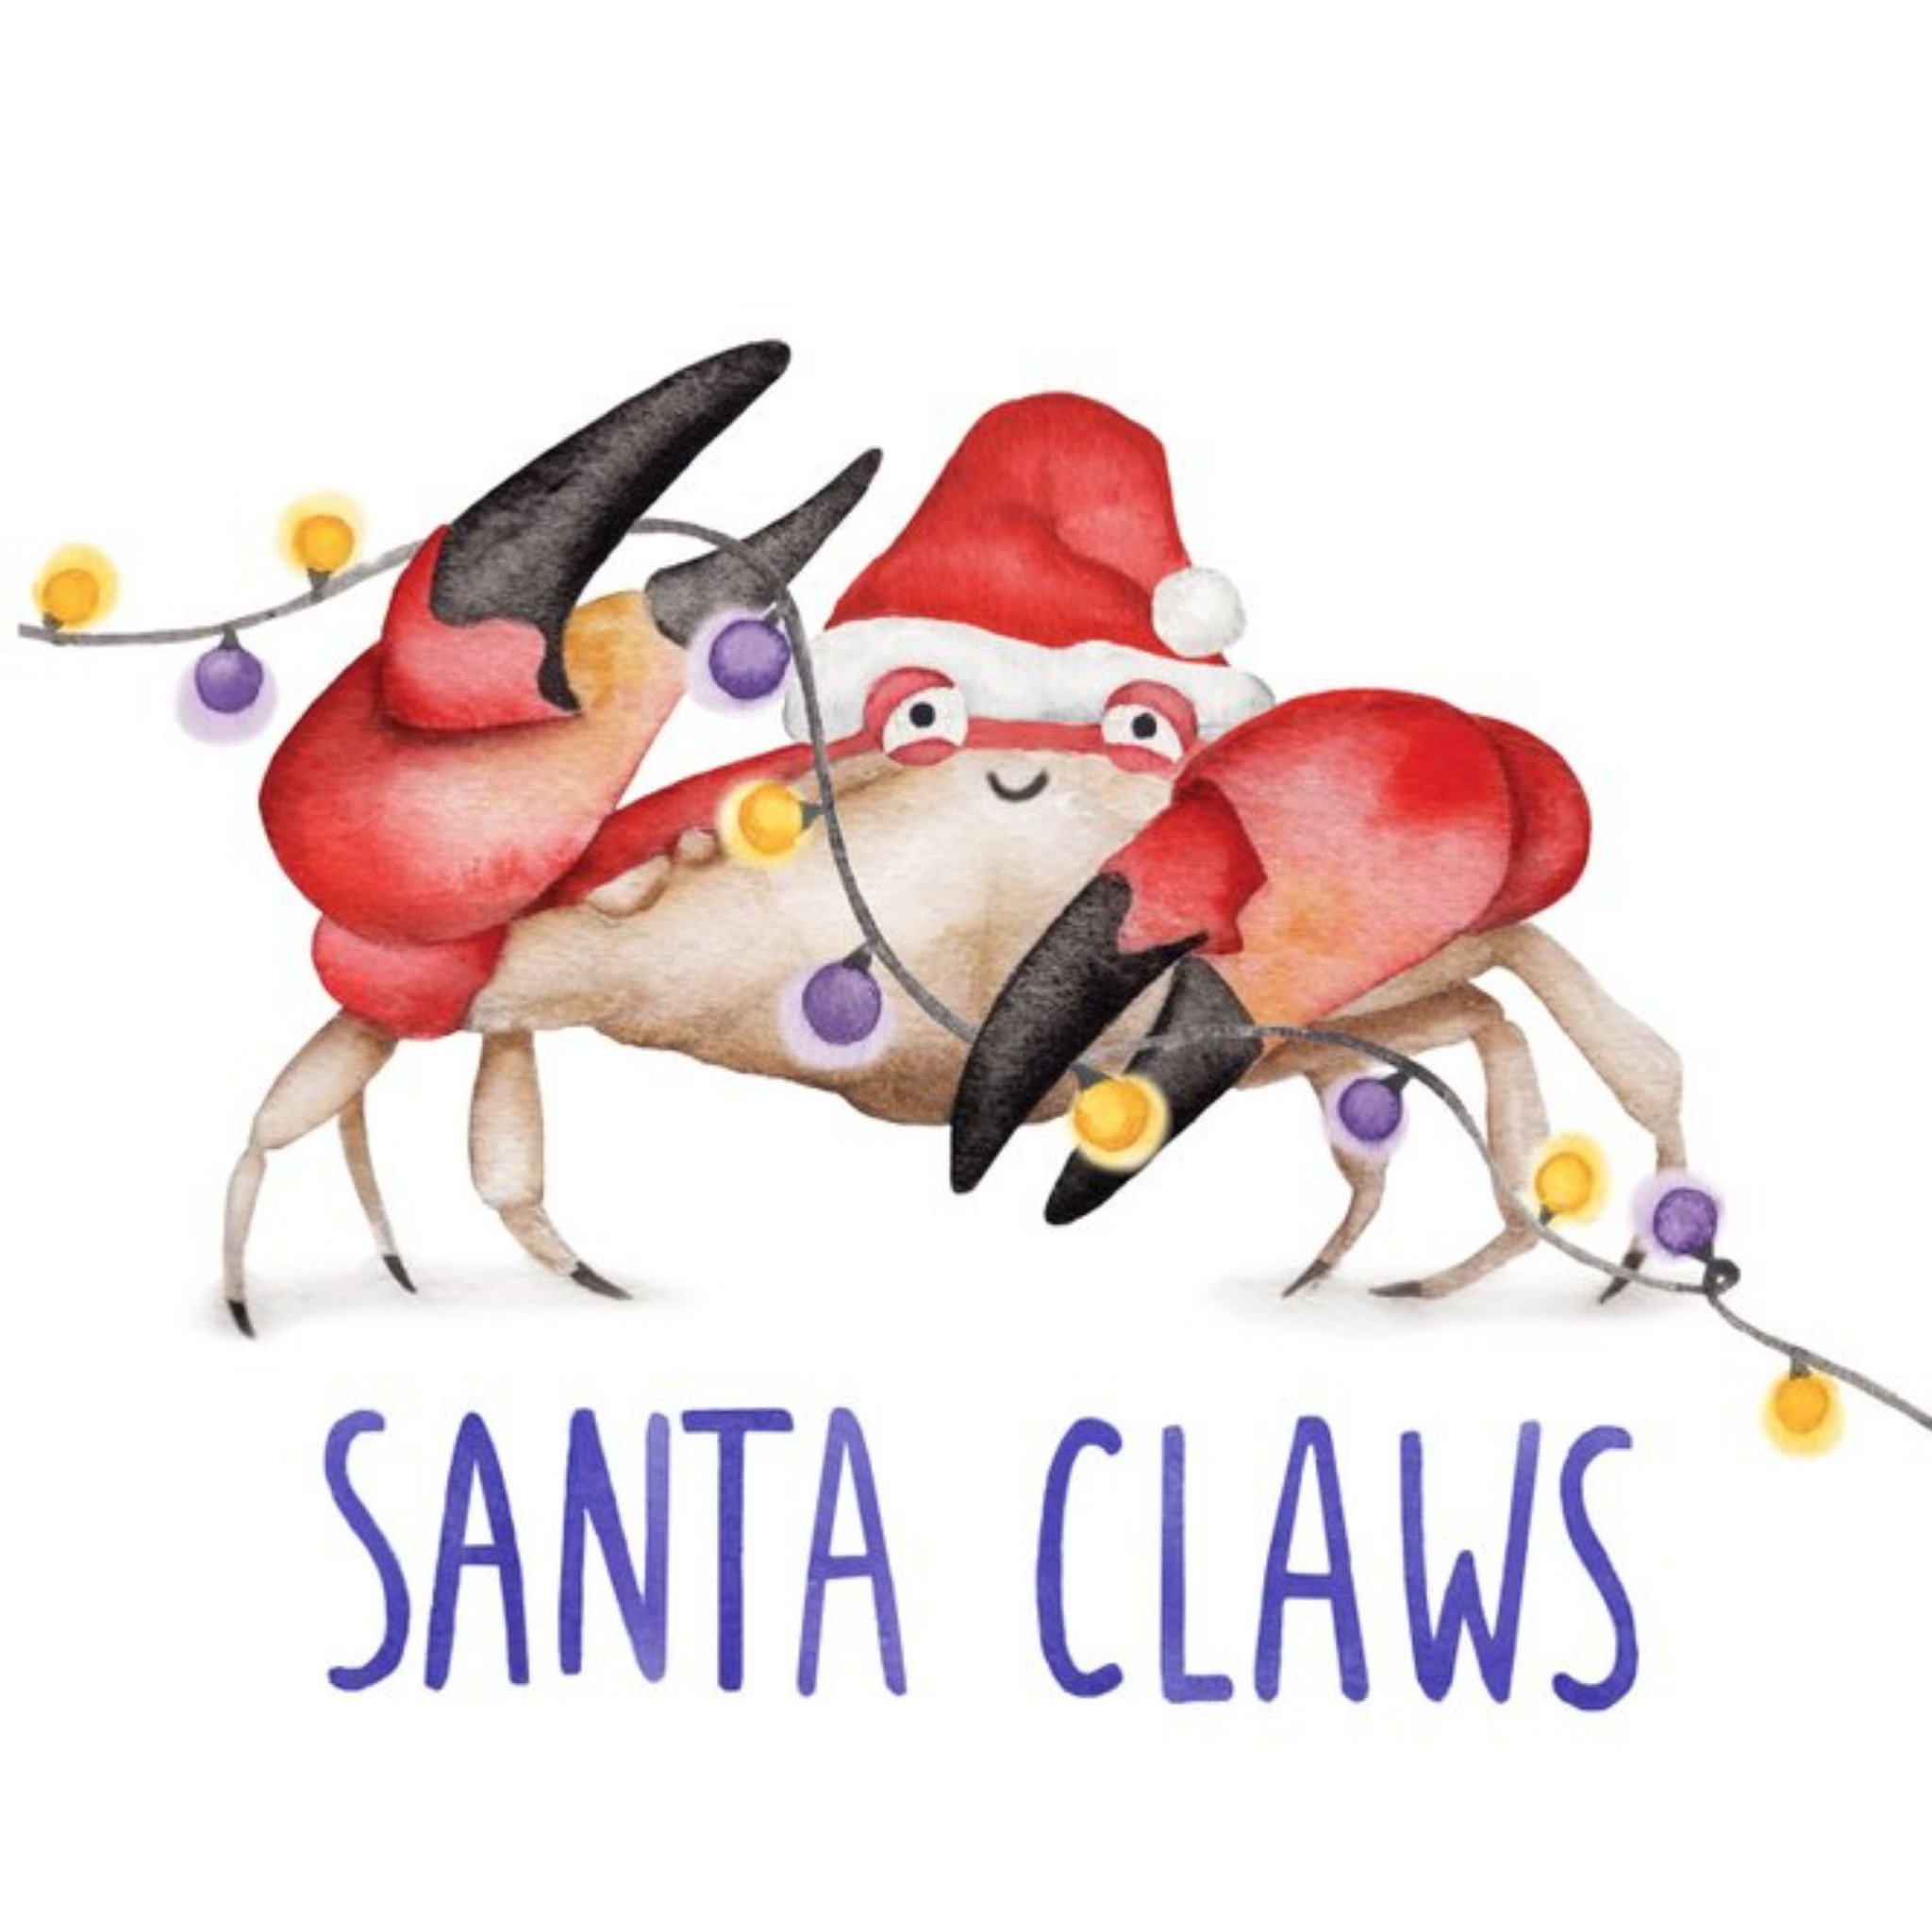 Moonpig Crab Santa Claws Pun Christmas Card, Square